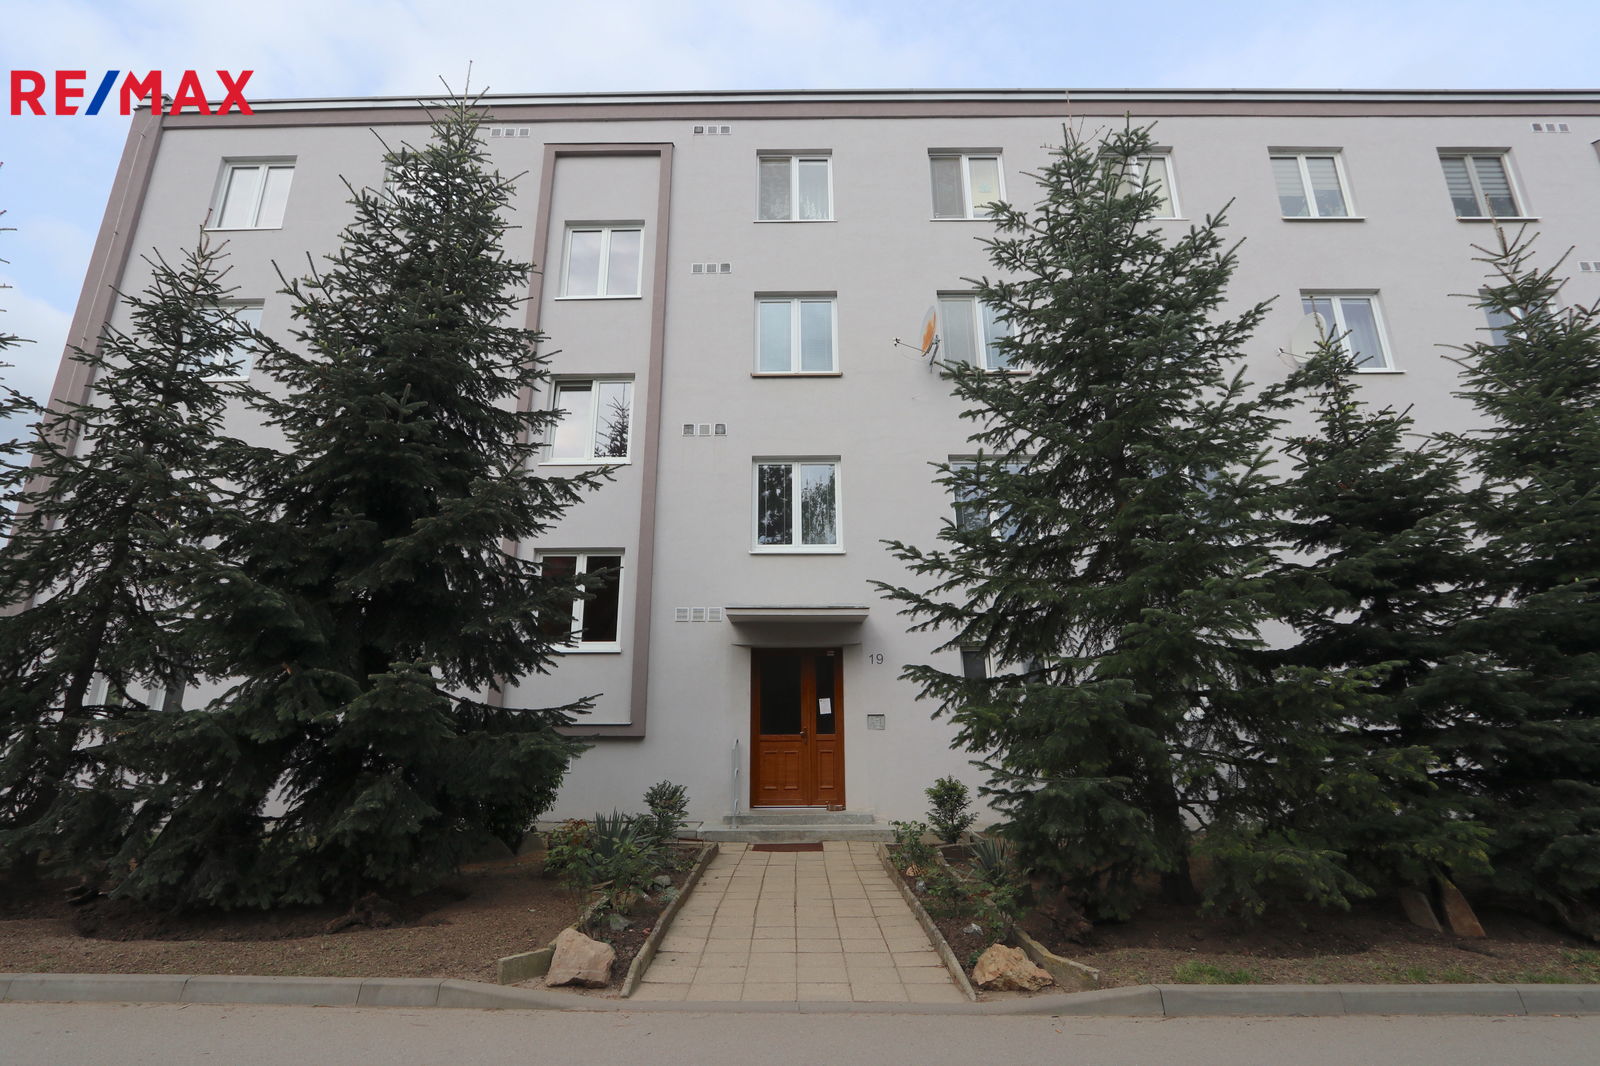 Prodej bytu 1+1 v osobním vlastnictví, 37 m2, Ivančice